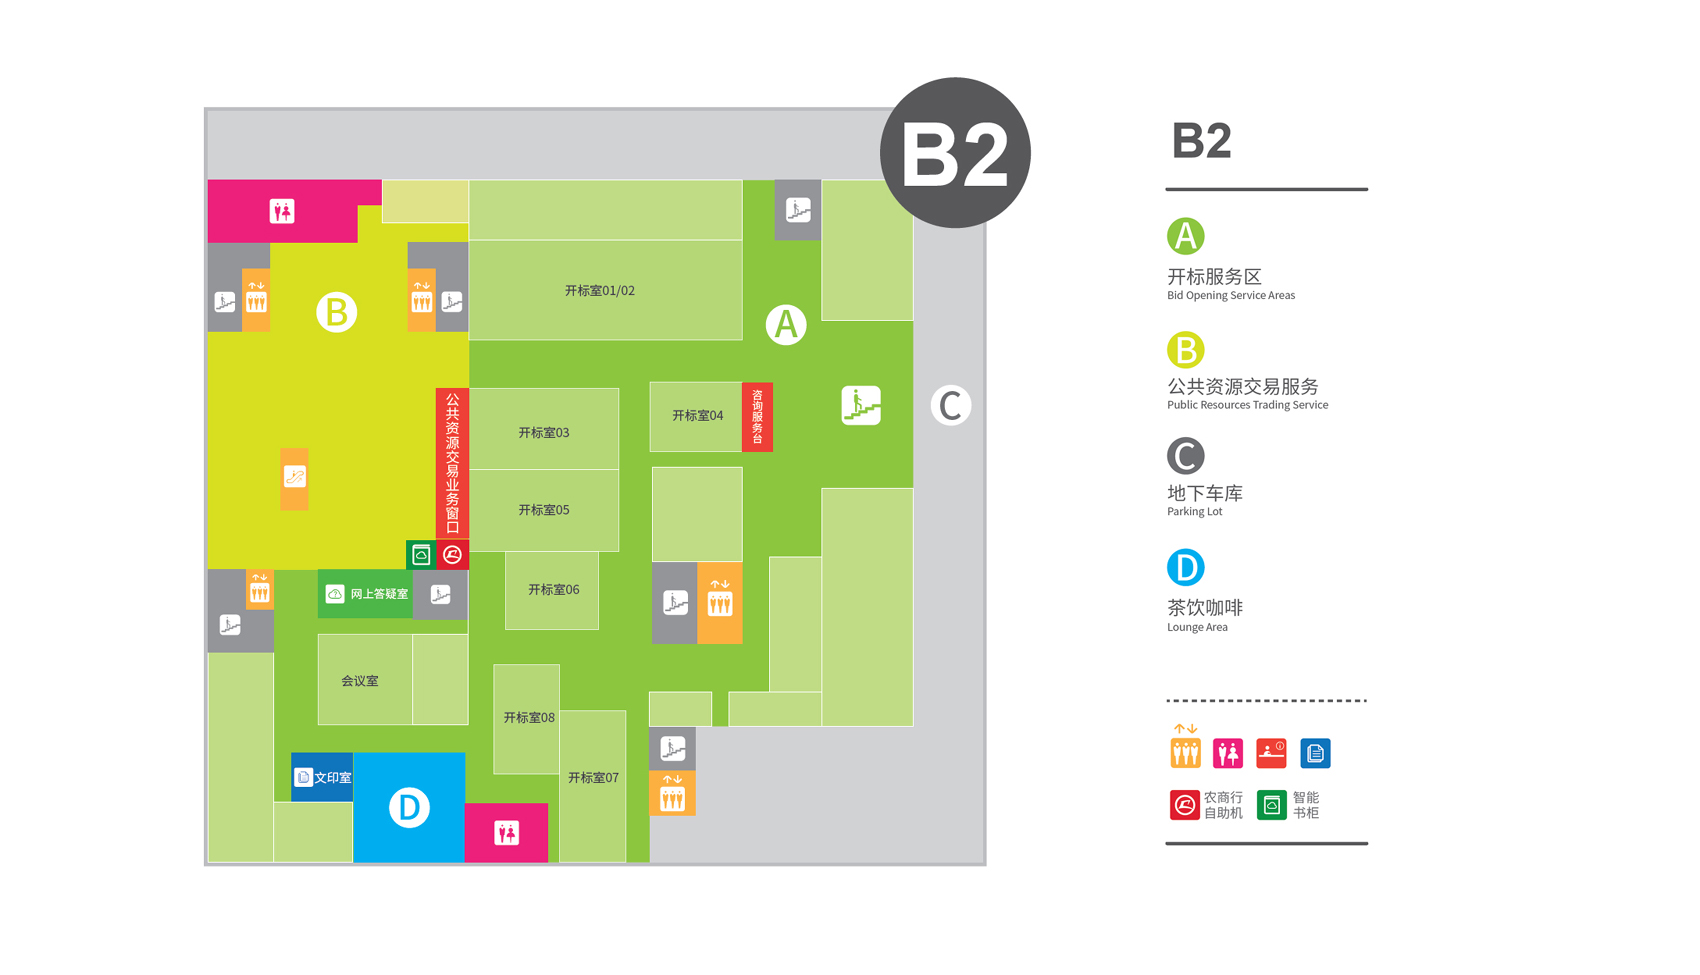 昆山市政务服务中心室内设计 / 上海思域室内设计